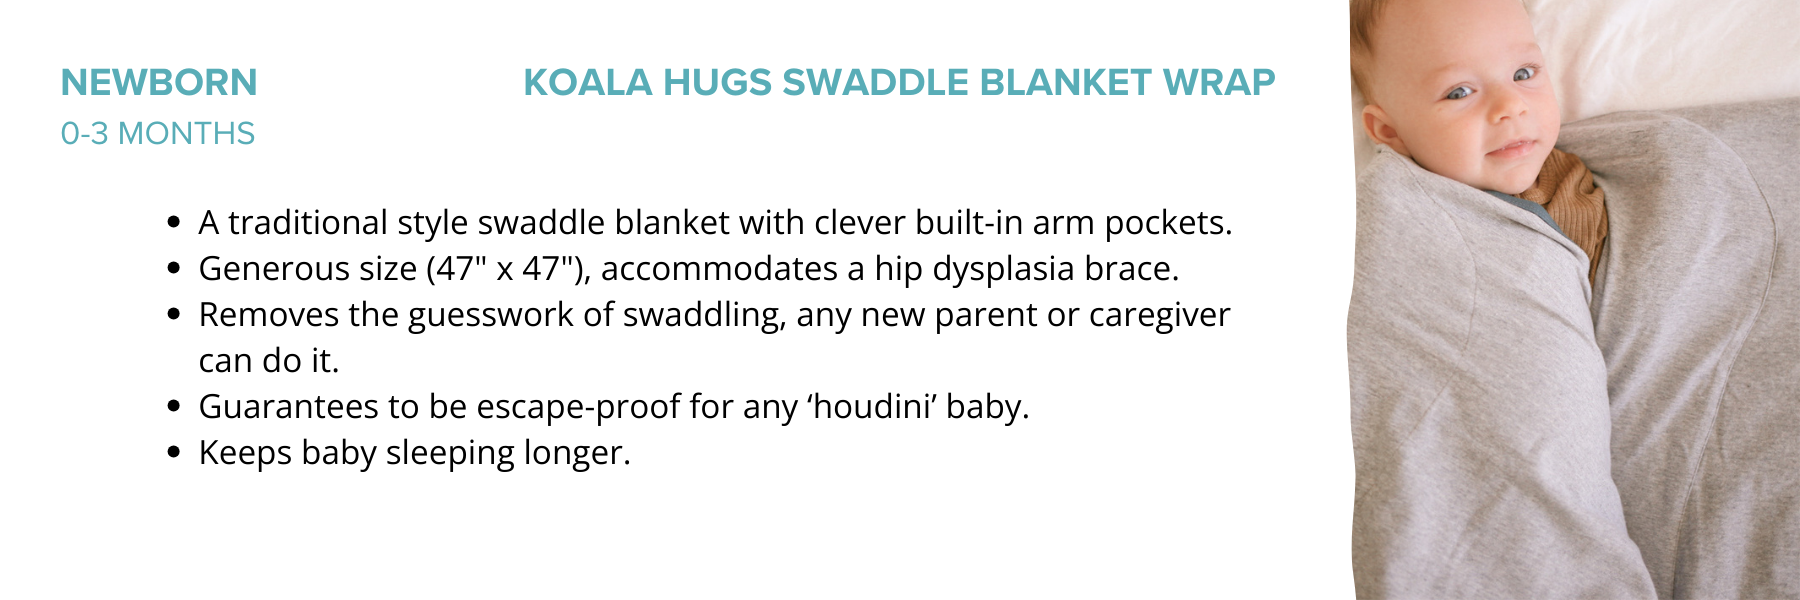 Best Newborn Swaddle - Koala Hugs